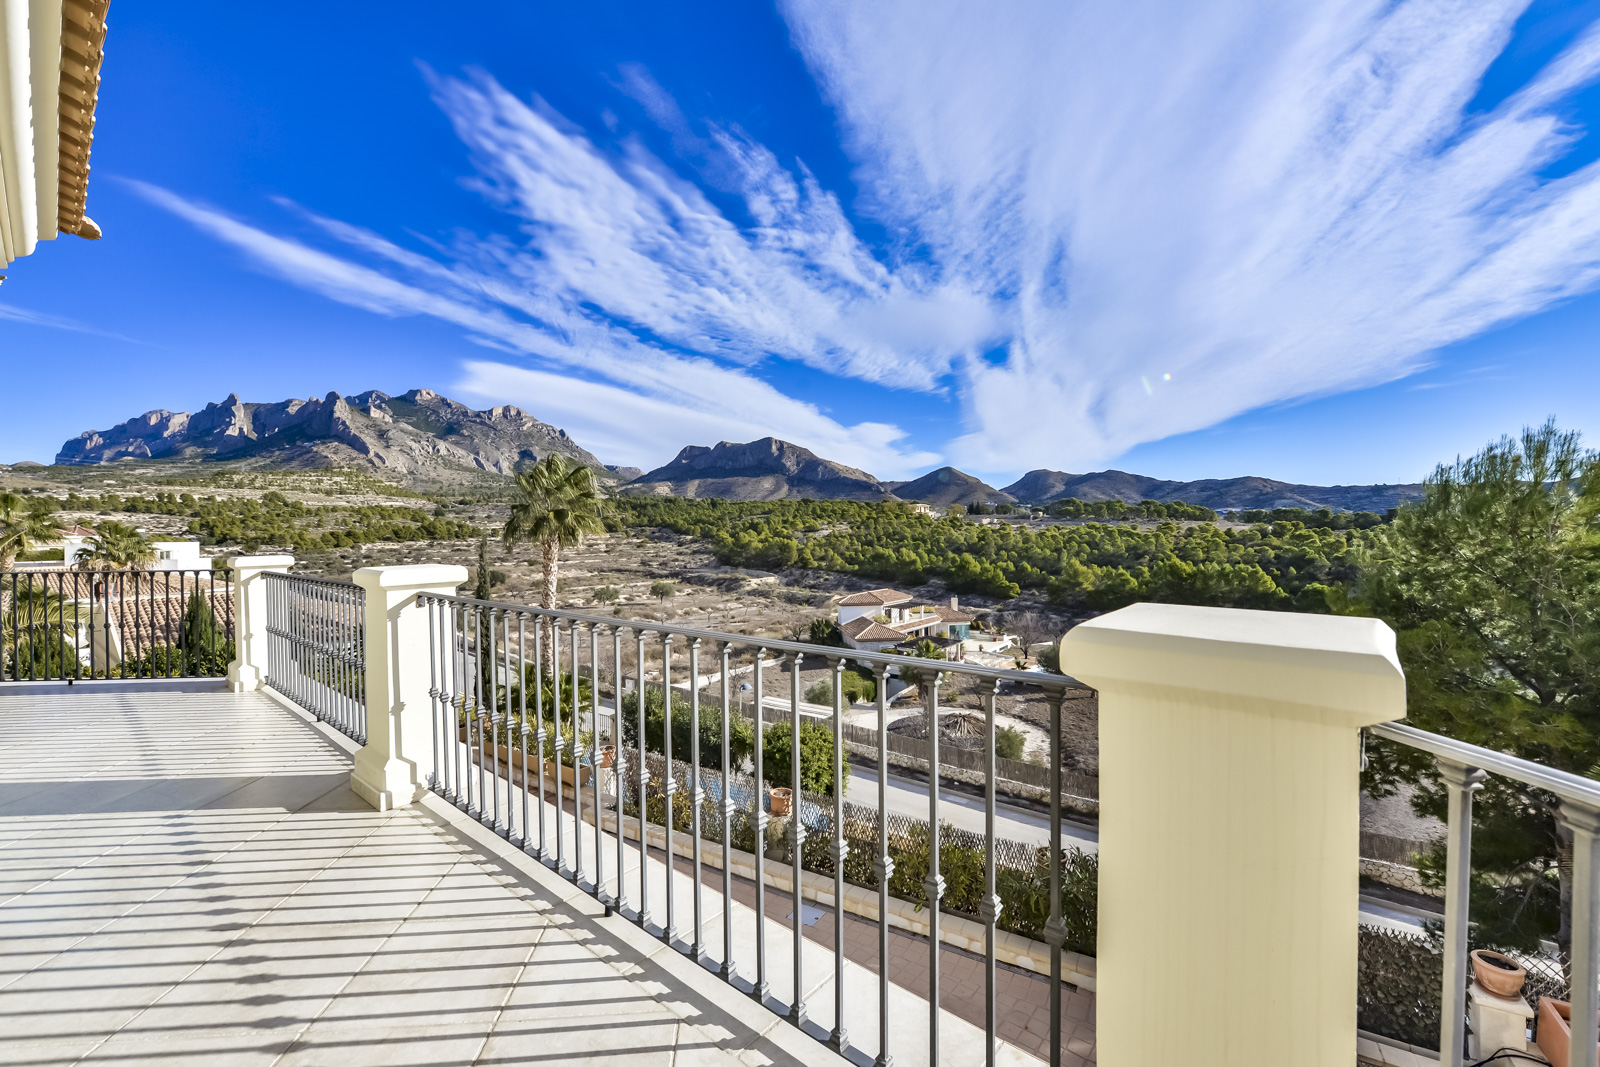 Villa única en venta en Busot, a 10 km de las playas de El Campello, Alicante